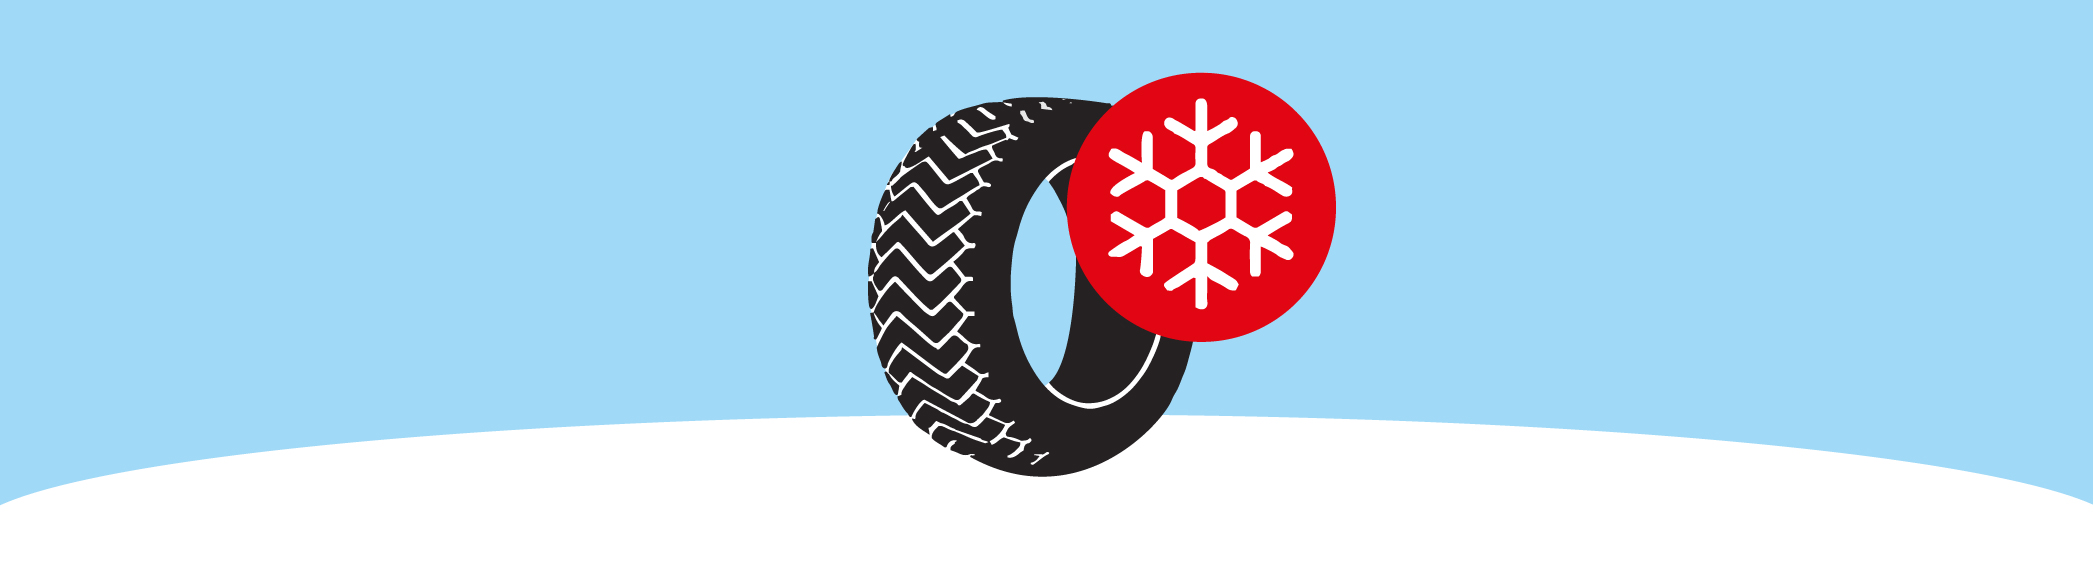 Regommex, spécialiste du pneu, pneumatique, pneu hiver, Romanel, Vernier, Vaud, Genève, changer pneus hiver, monter pneus hiver